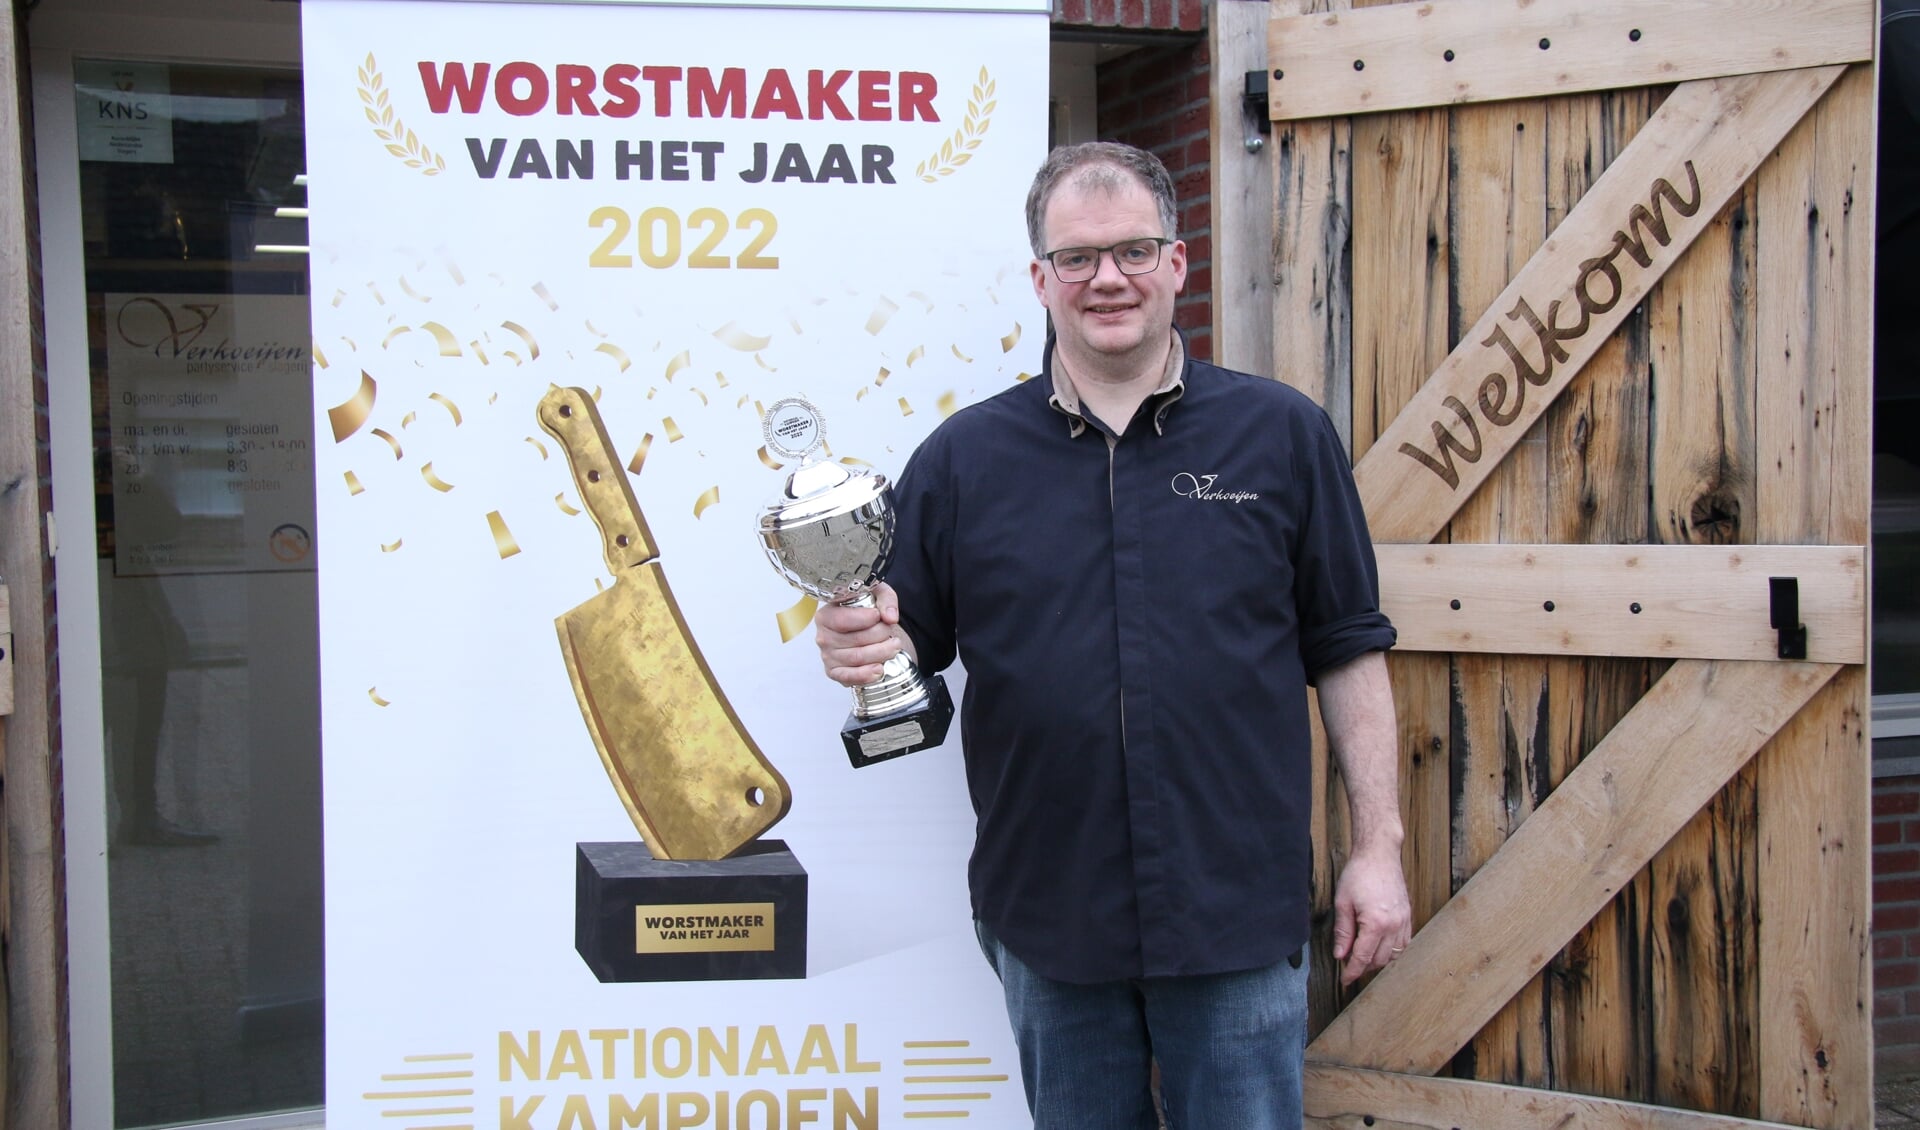 John Verkoeijen is trots op de titel Worstmaker van het jaar 2022. 